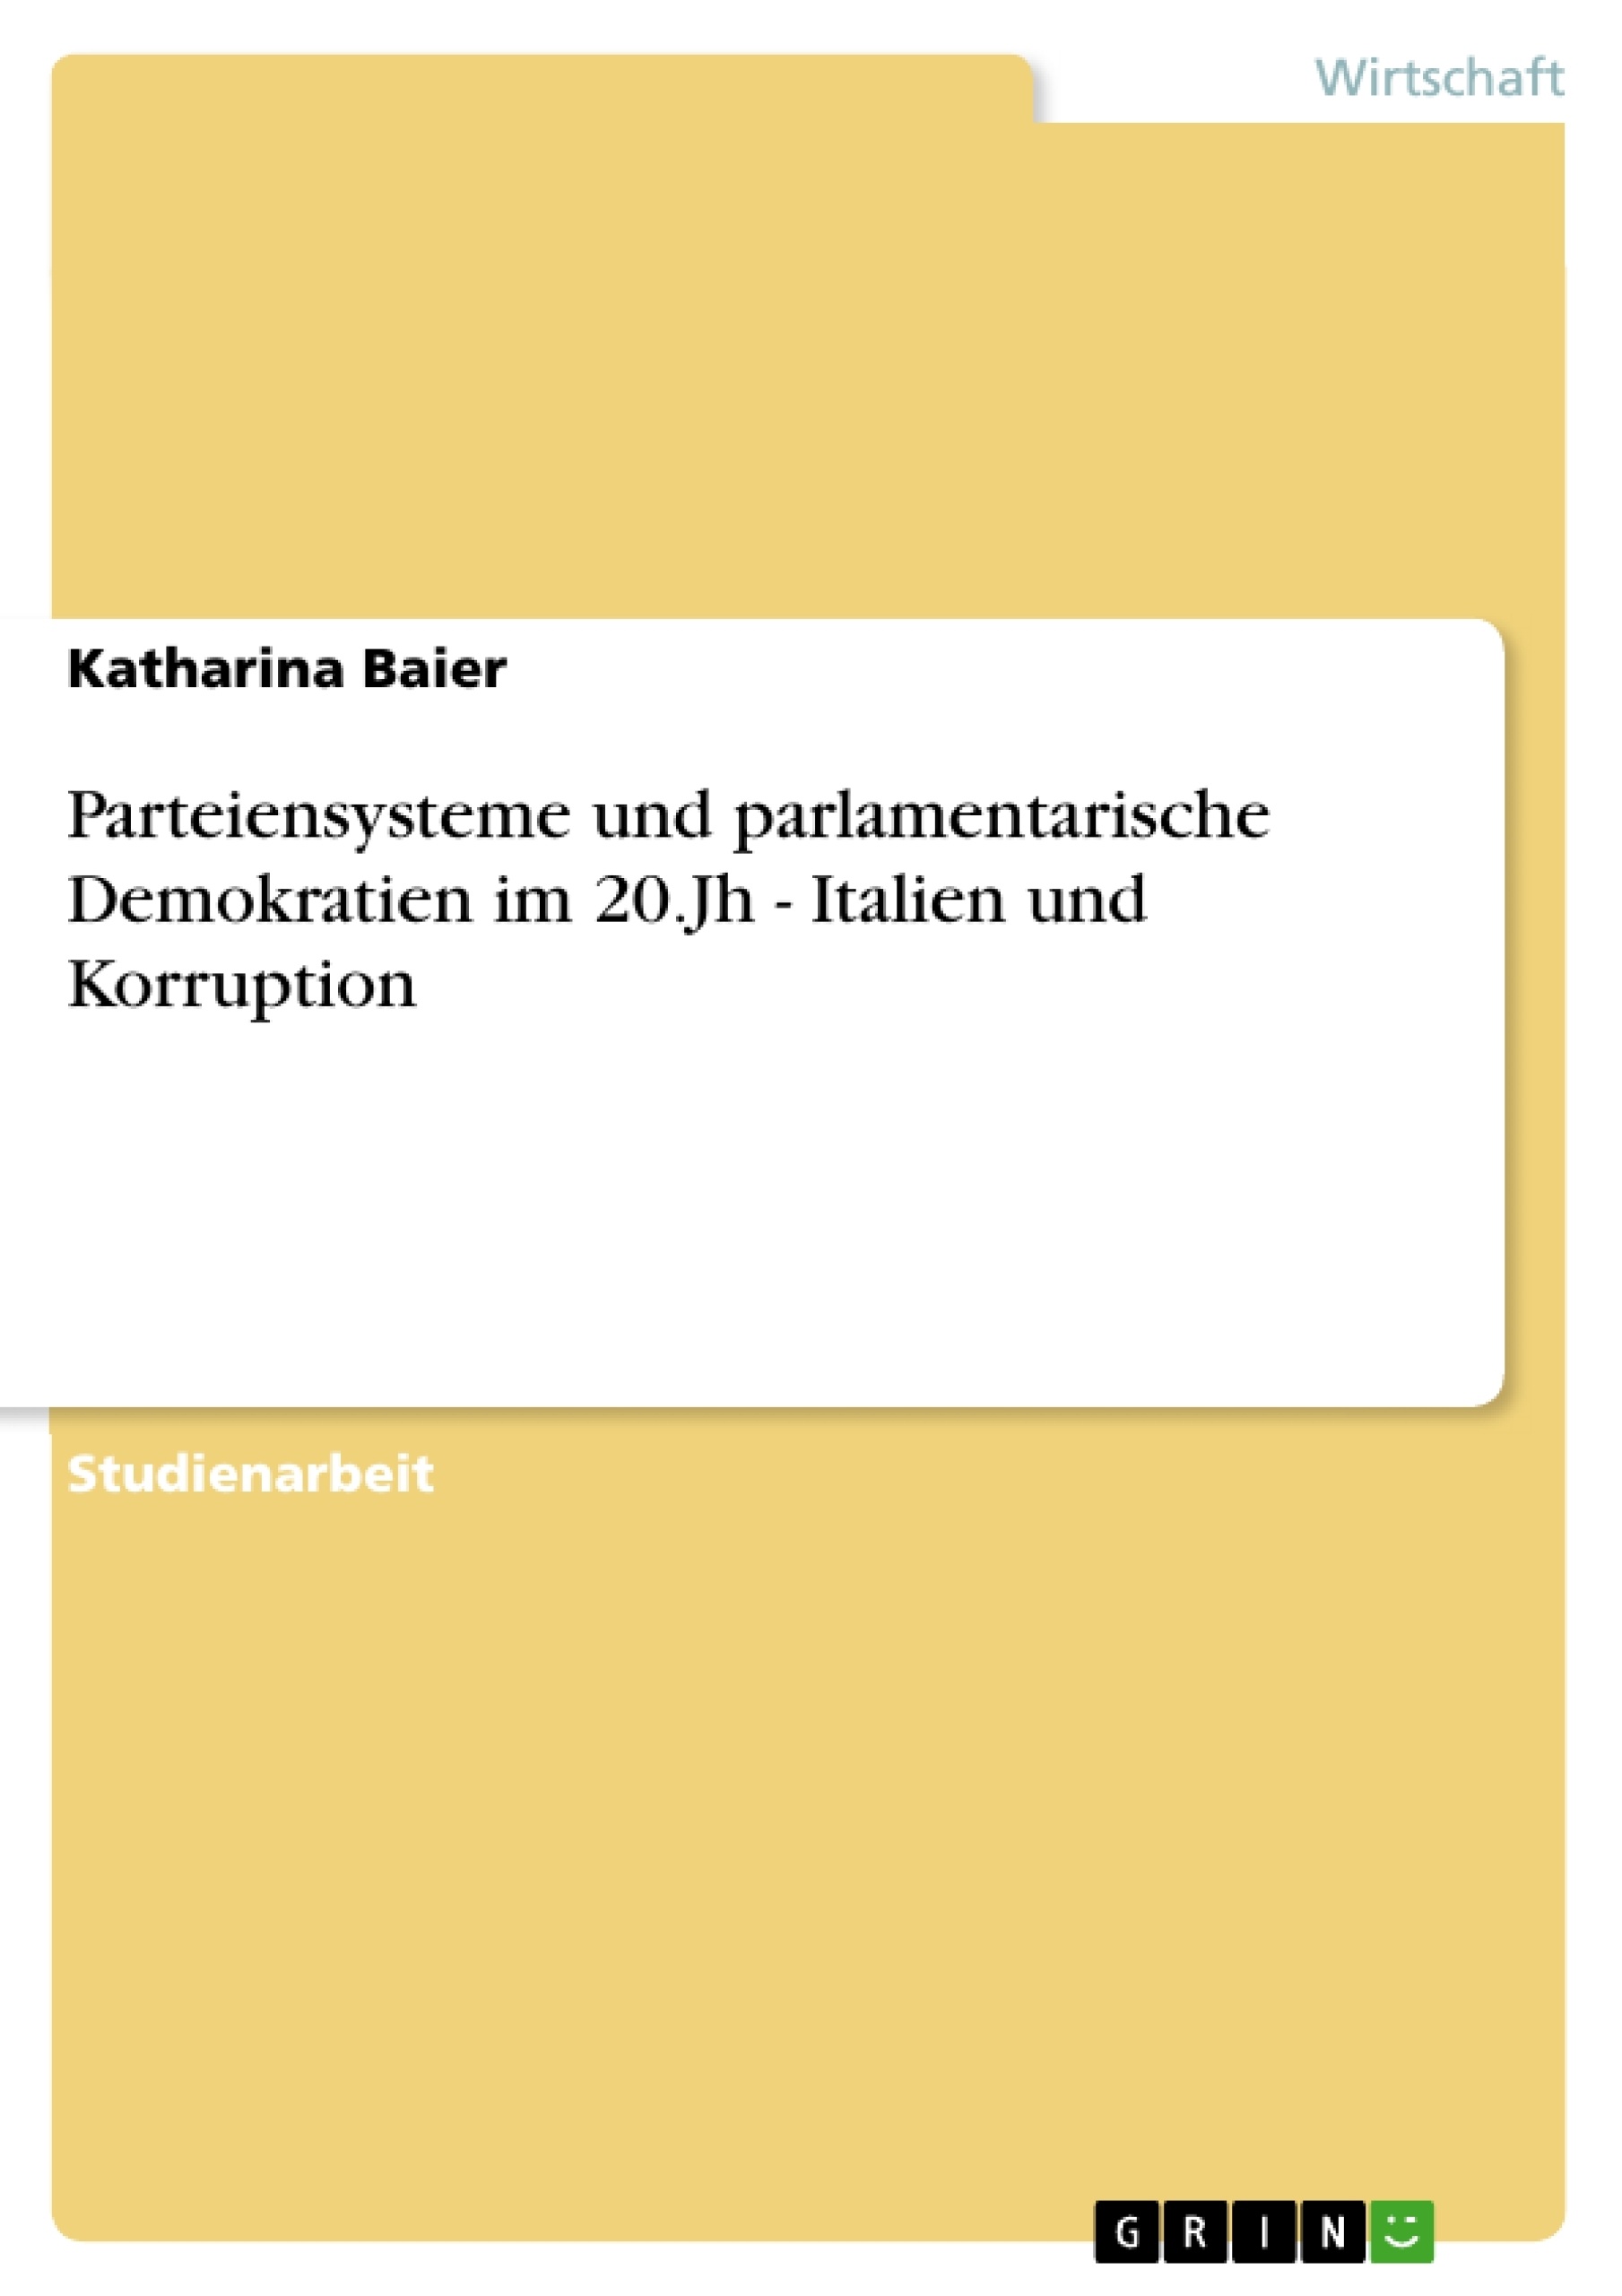 Título: Parteiensysteme und parlamentarische Demokratien im 20.Jh - Italien und Korruption